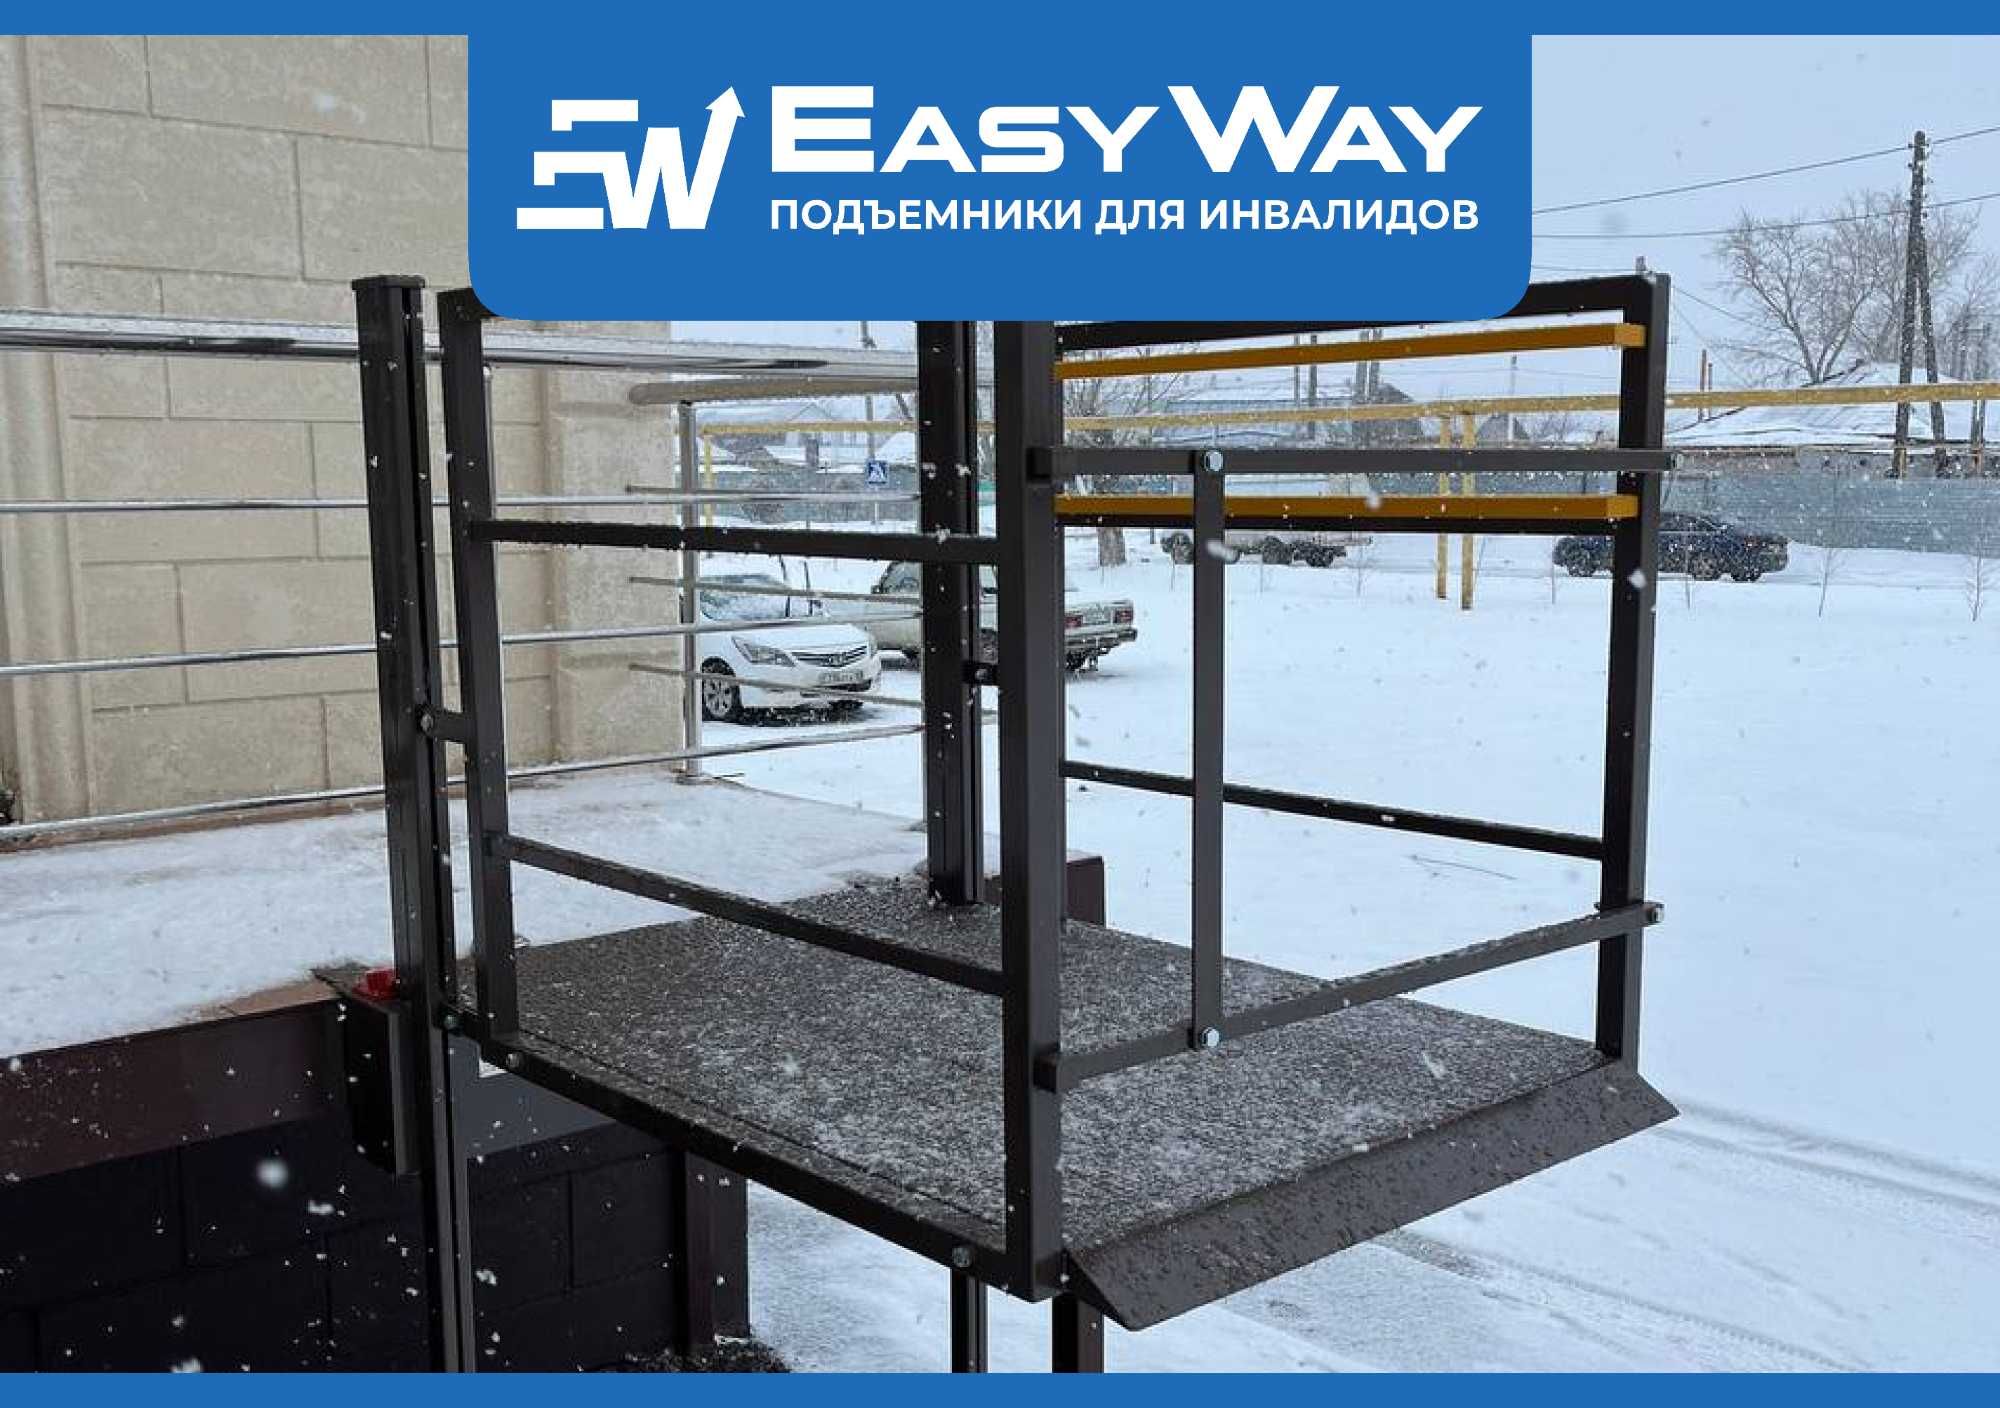 EasyWay: Подъёмники для инвалидов колясочников (г. Шымкент)